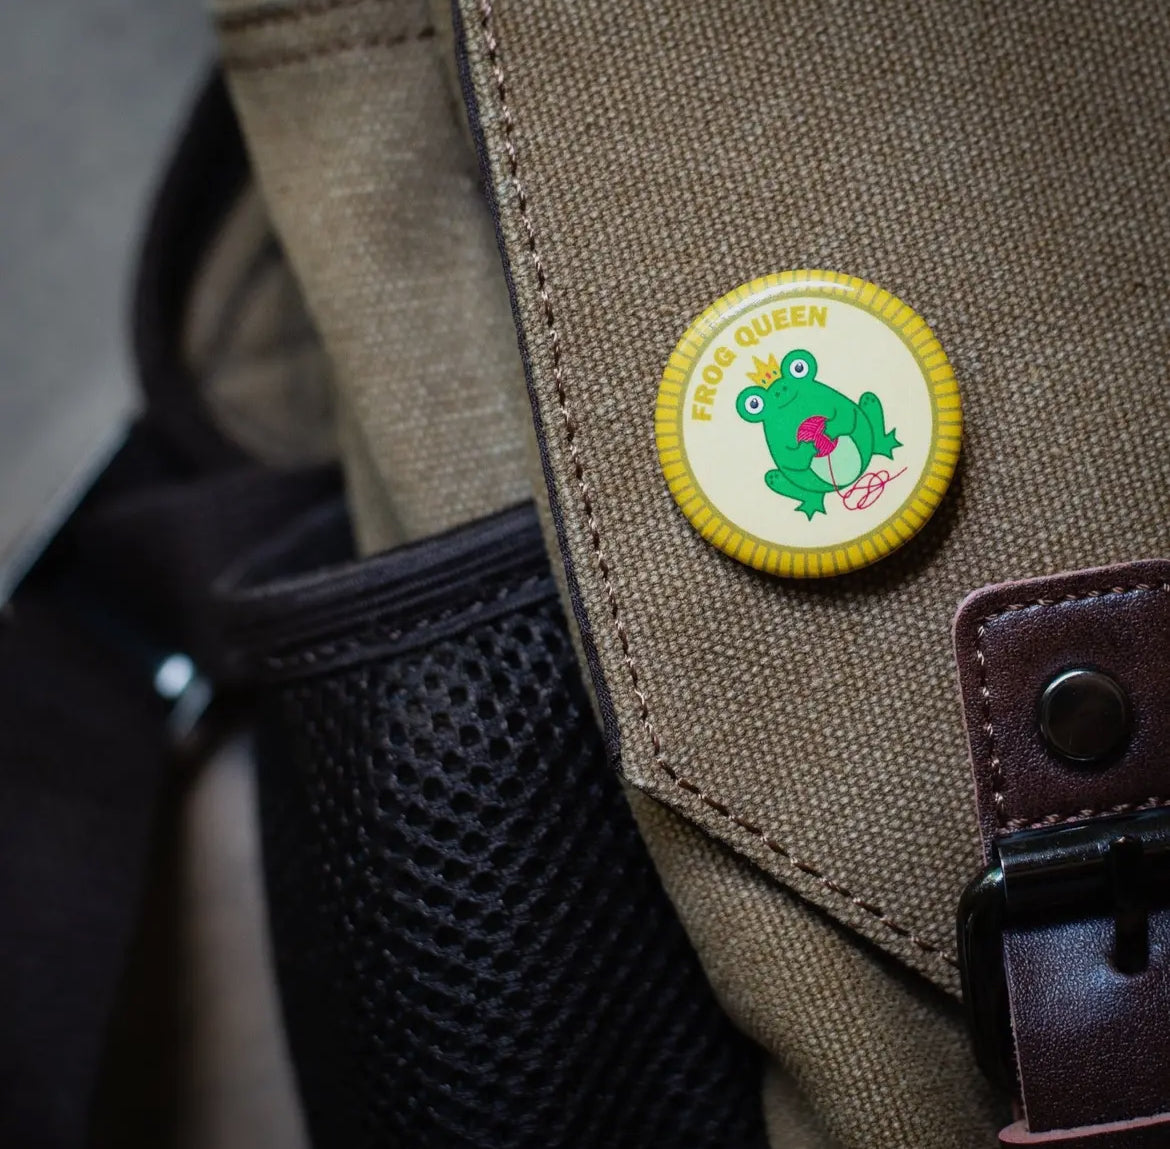 Purl Scouts Merit Badges